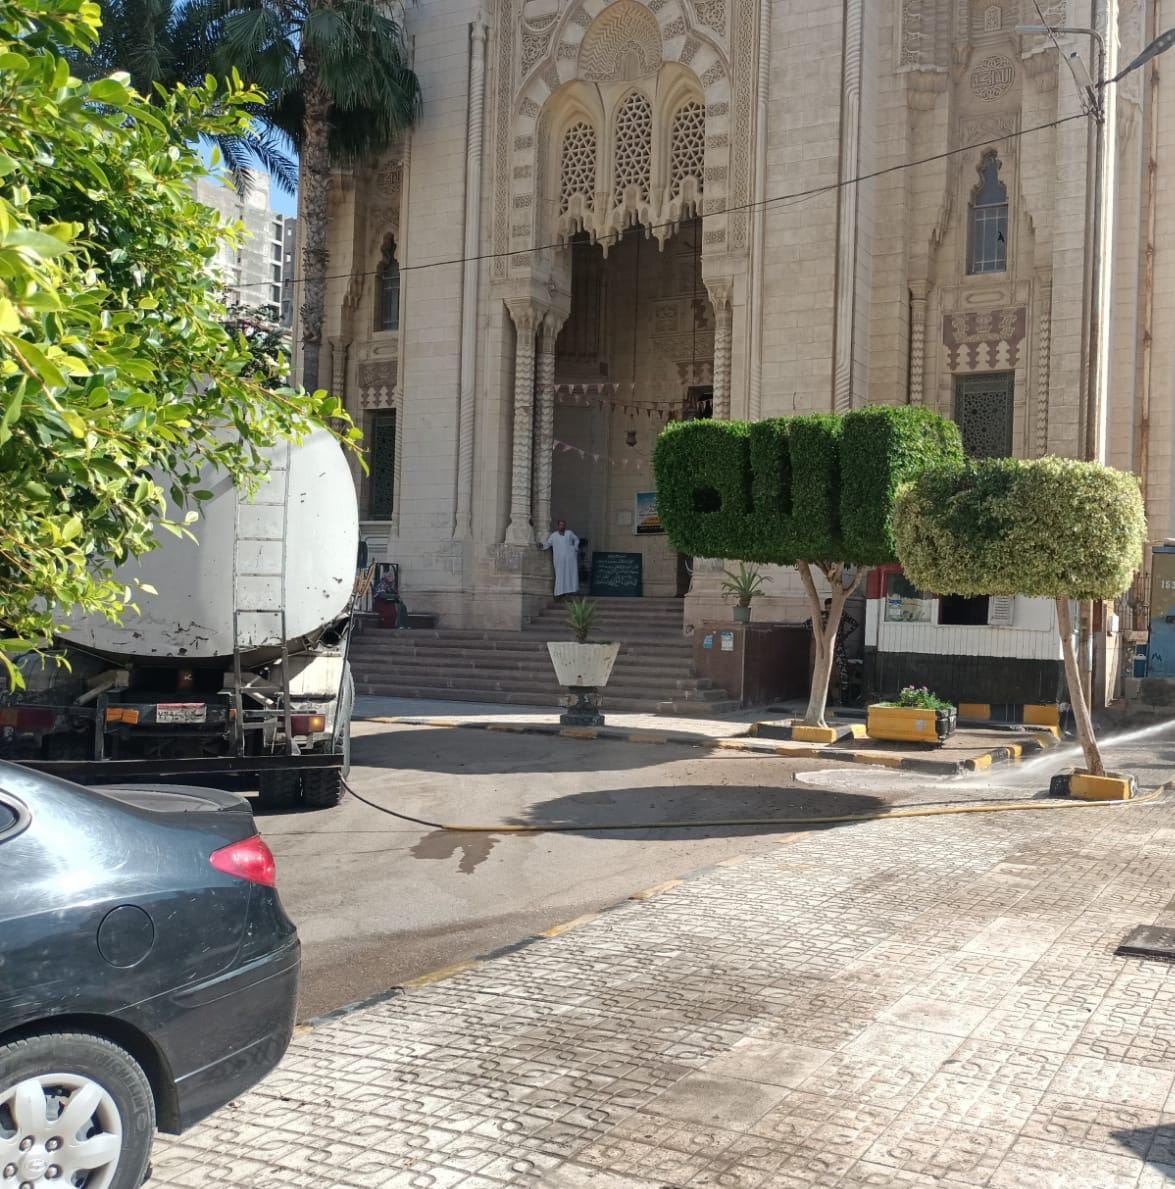 تنظيف الشوارع وتطهير المساجد بالإسككندرية (7)